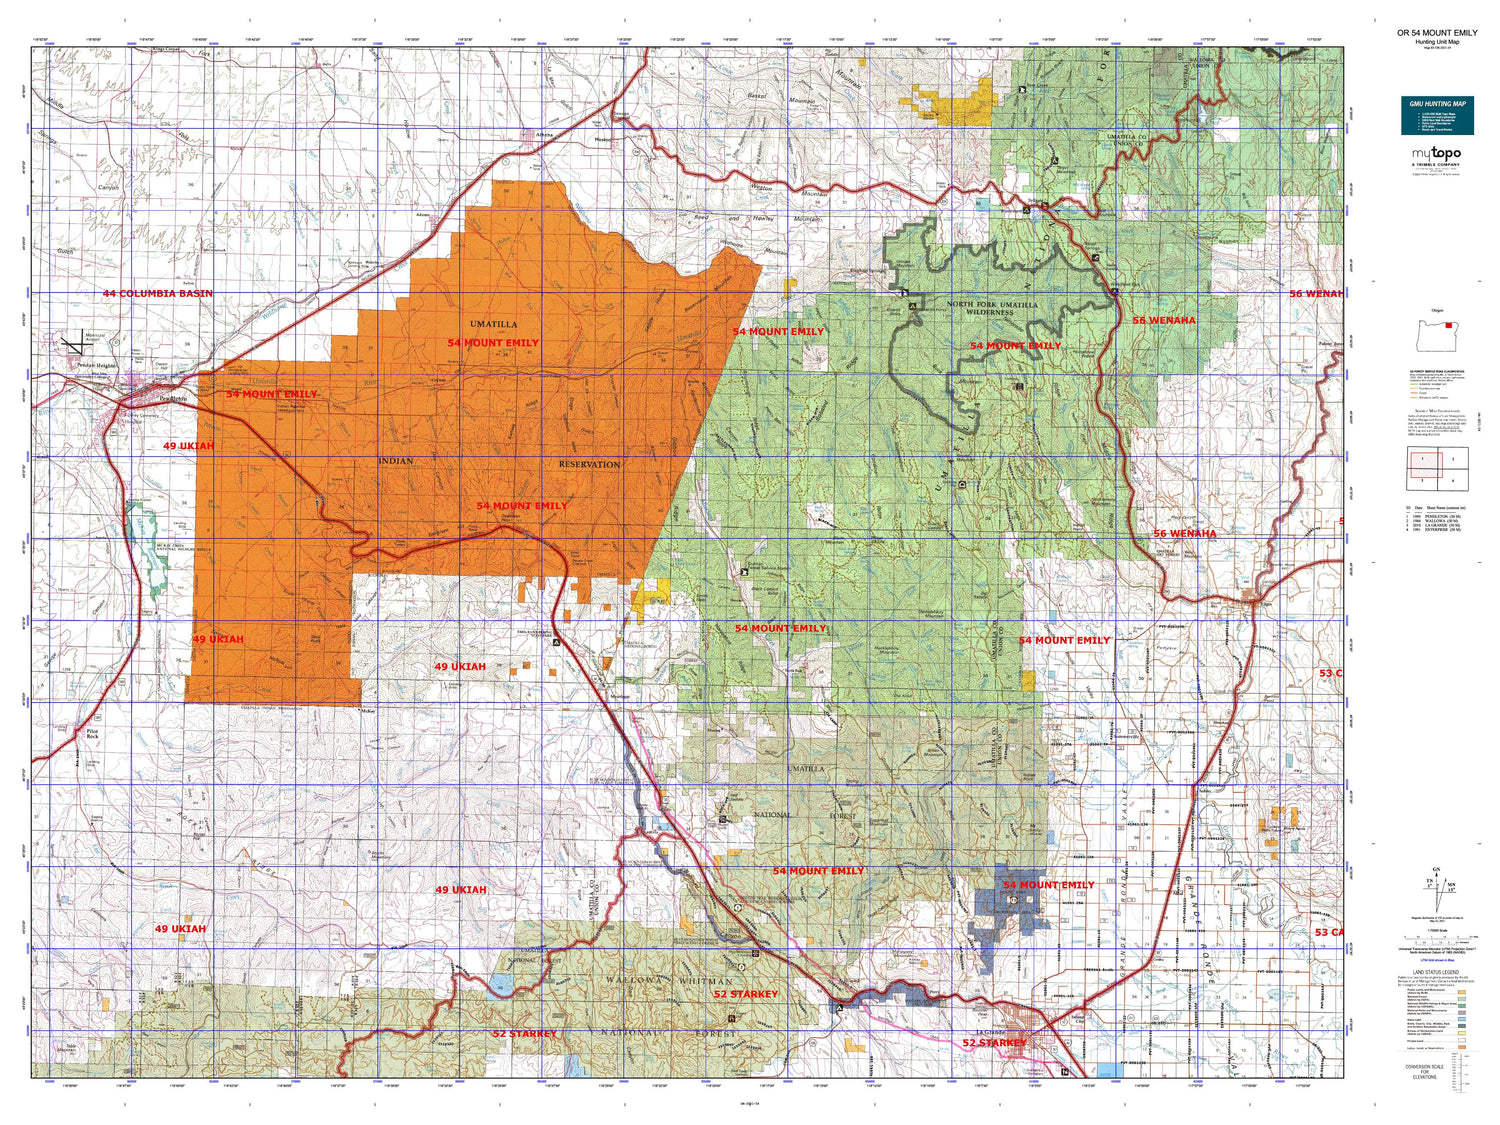 Oregon 54 Mount Emily Map Image